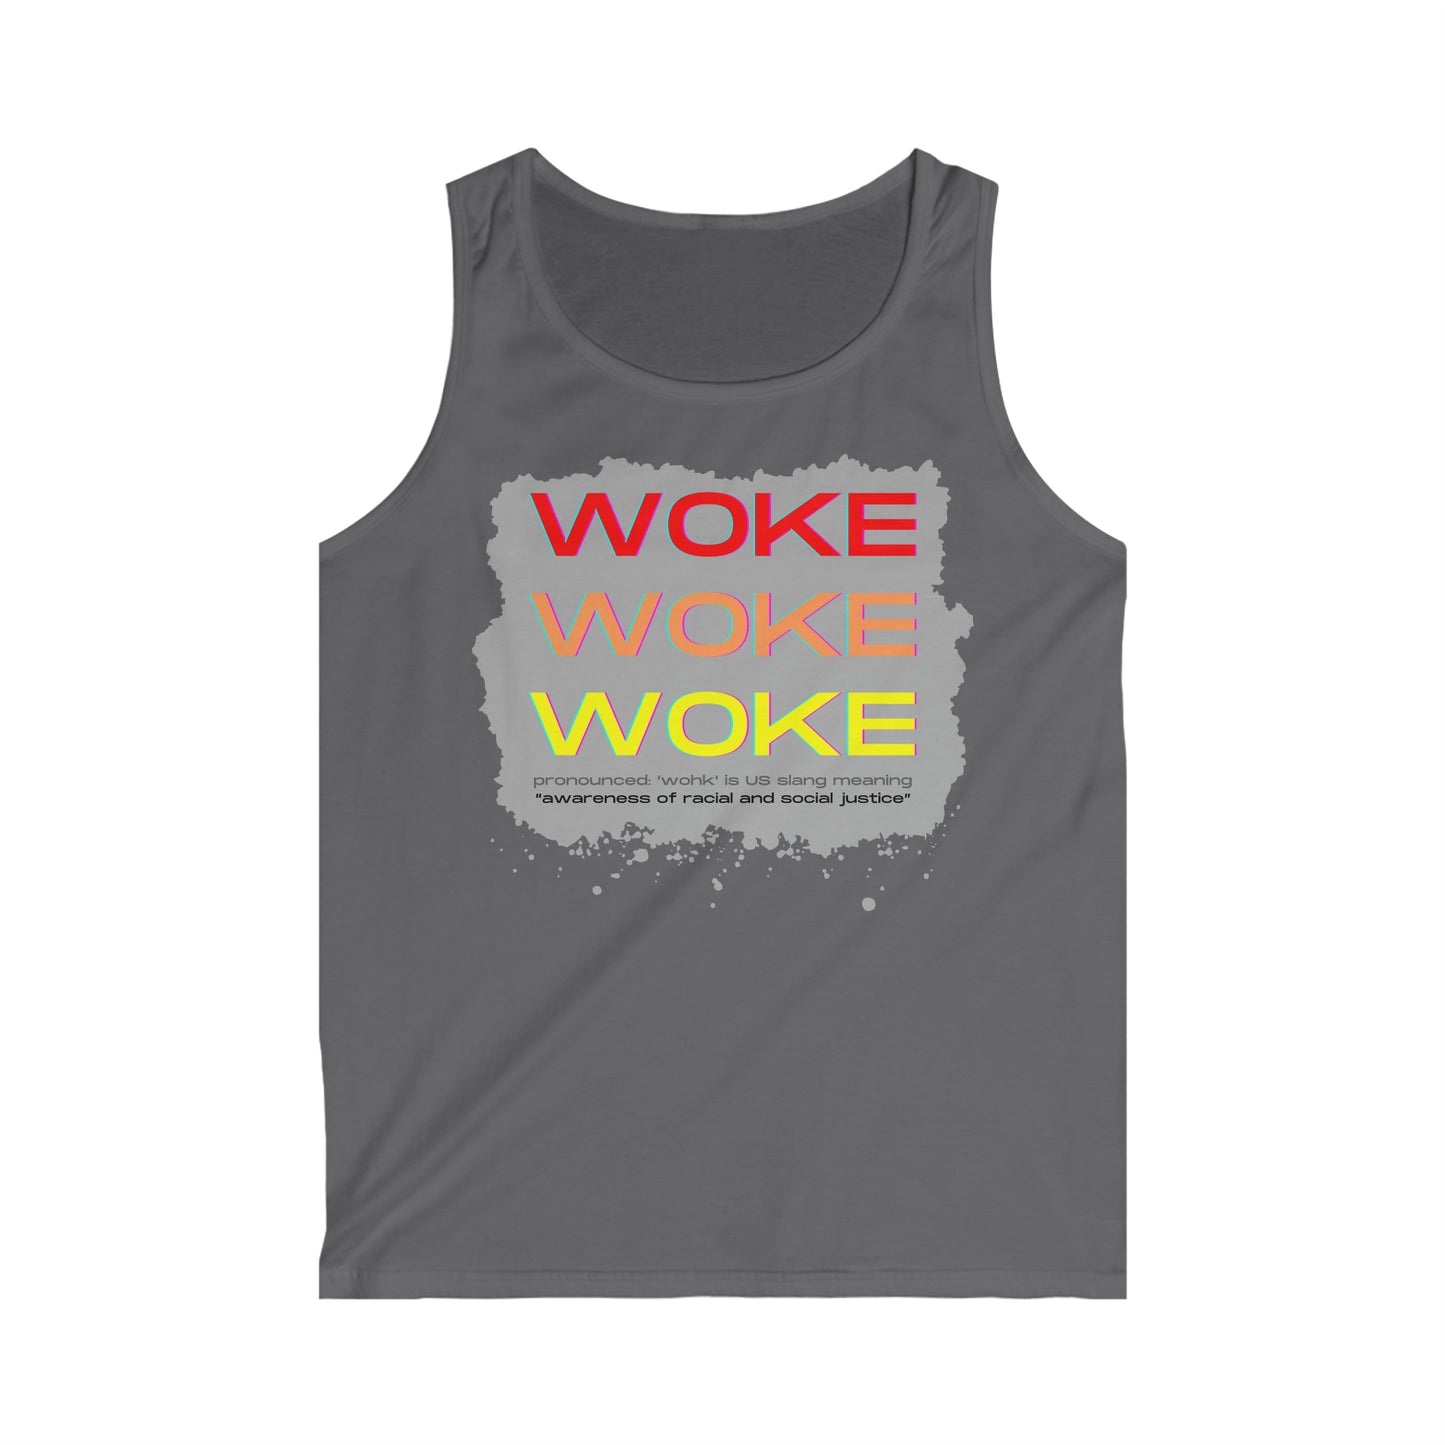 Woke Woke Woke Men's Softstyle Tank Top